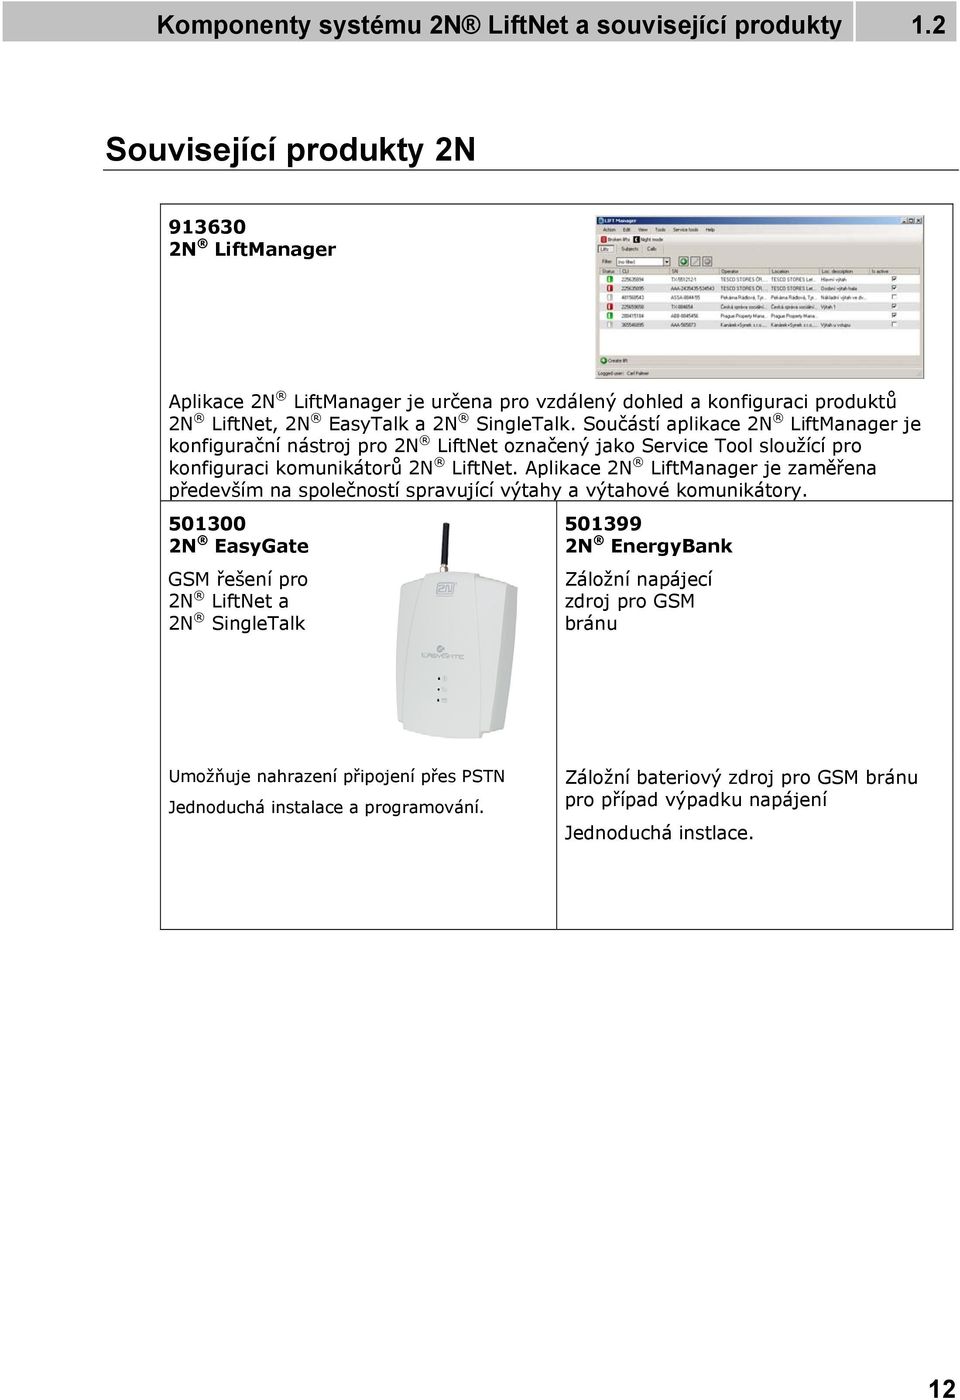 Součástí aplikace 2N LiftManager je konfigurační nástroj pro 2N LiftNet označený jako Service Tool sloužící pro konfiguraci komunikátorů 2N LiftNet.